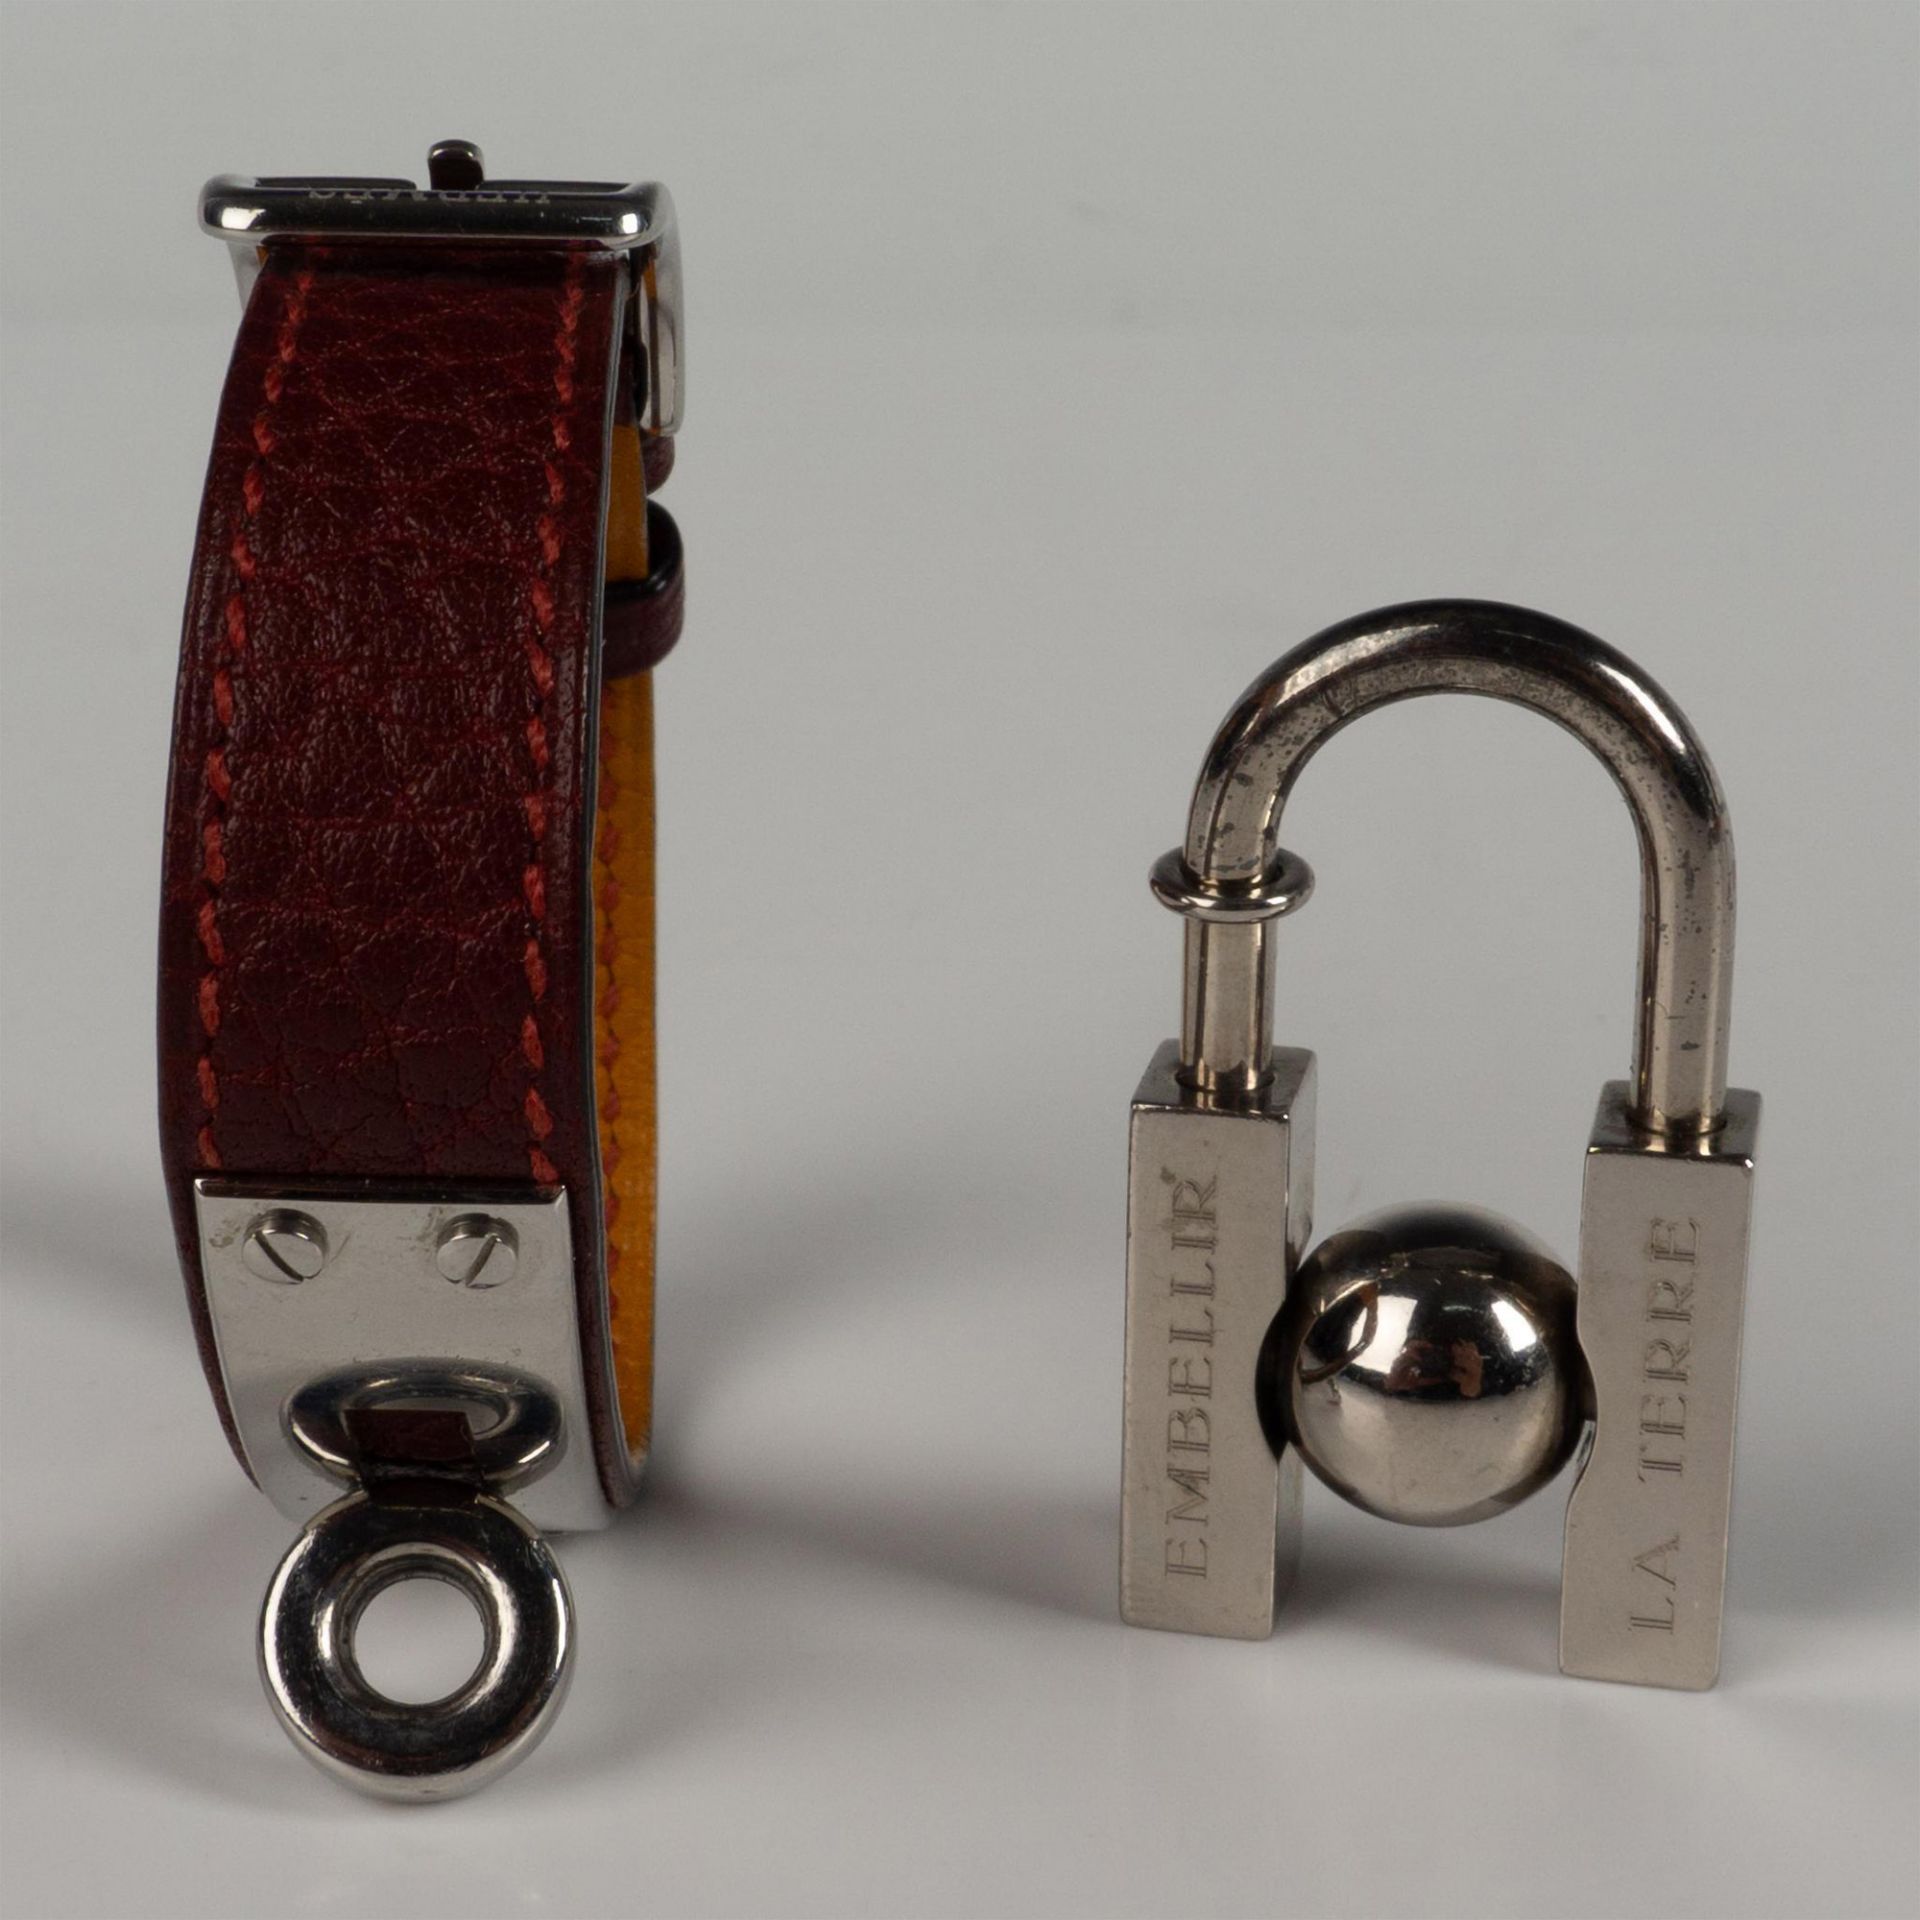 Hermes 2001 Limited Edition Cadena Lock Bracelet - Image 4 of 4